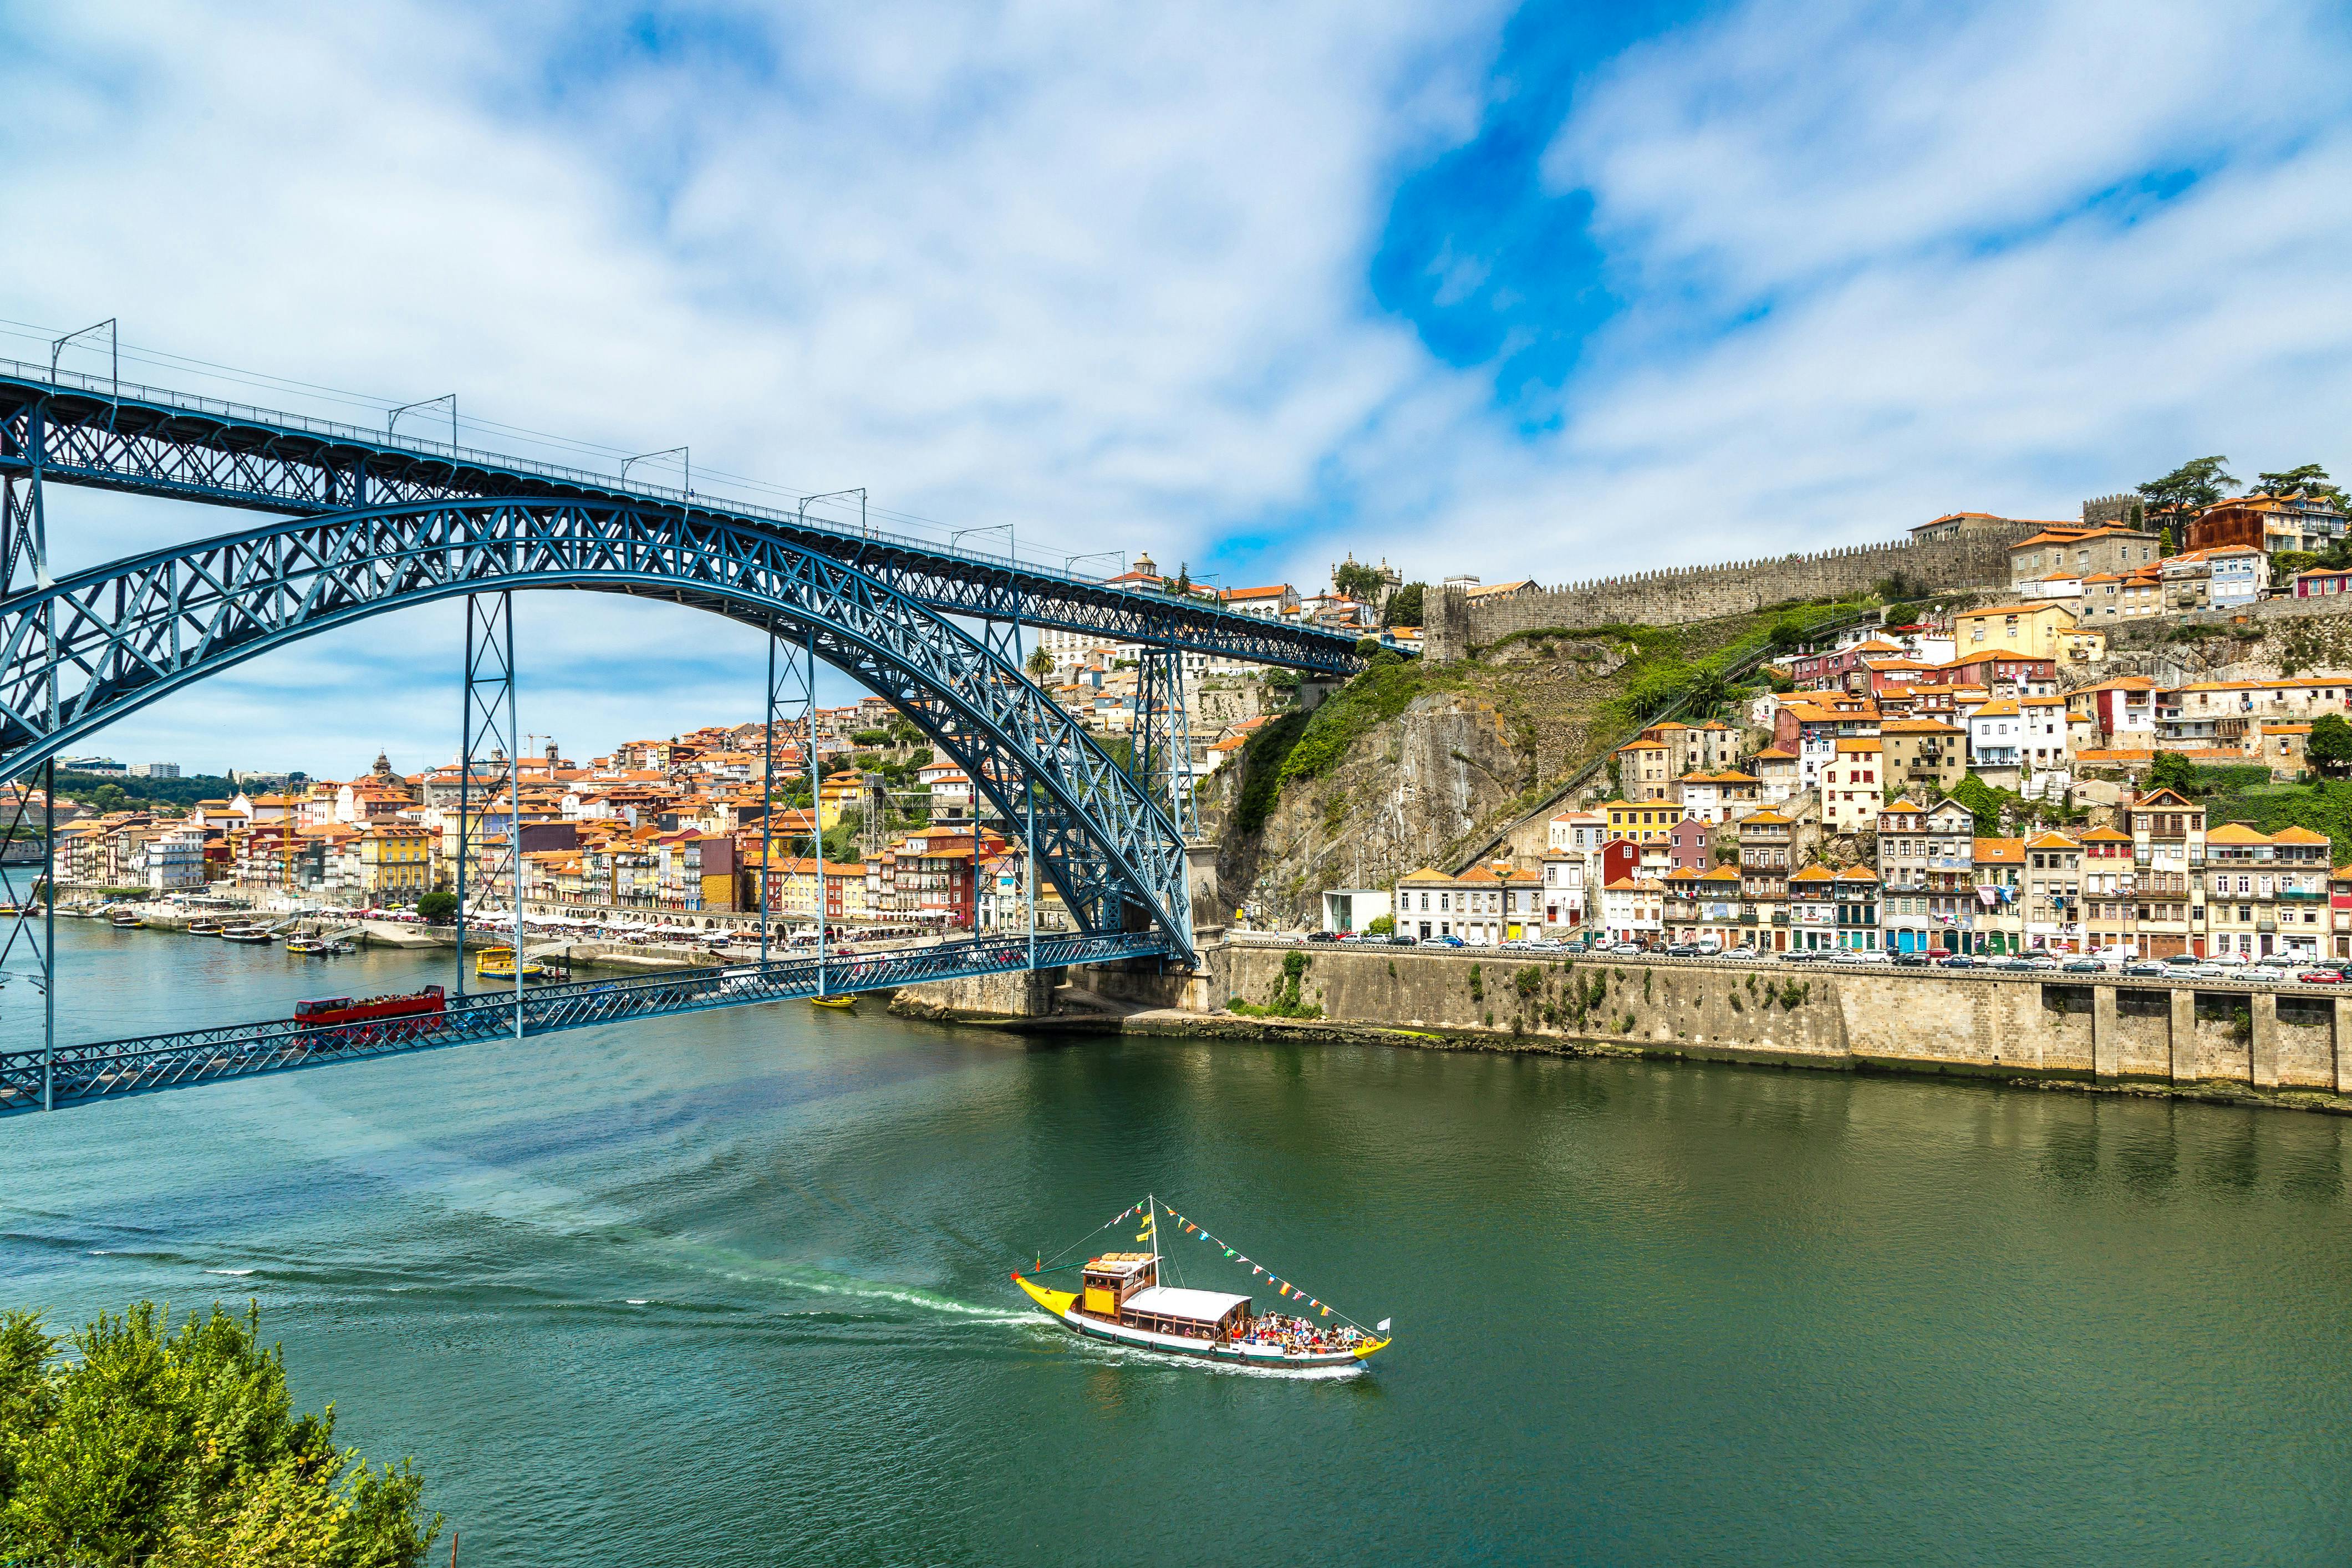 Crociera nella città di Porto e biglietti combinati hop-on hop-off